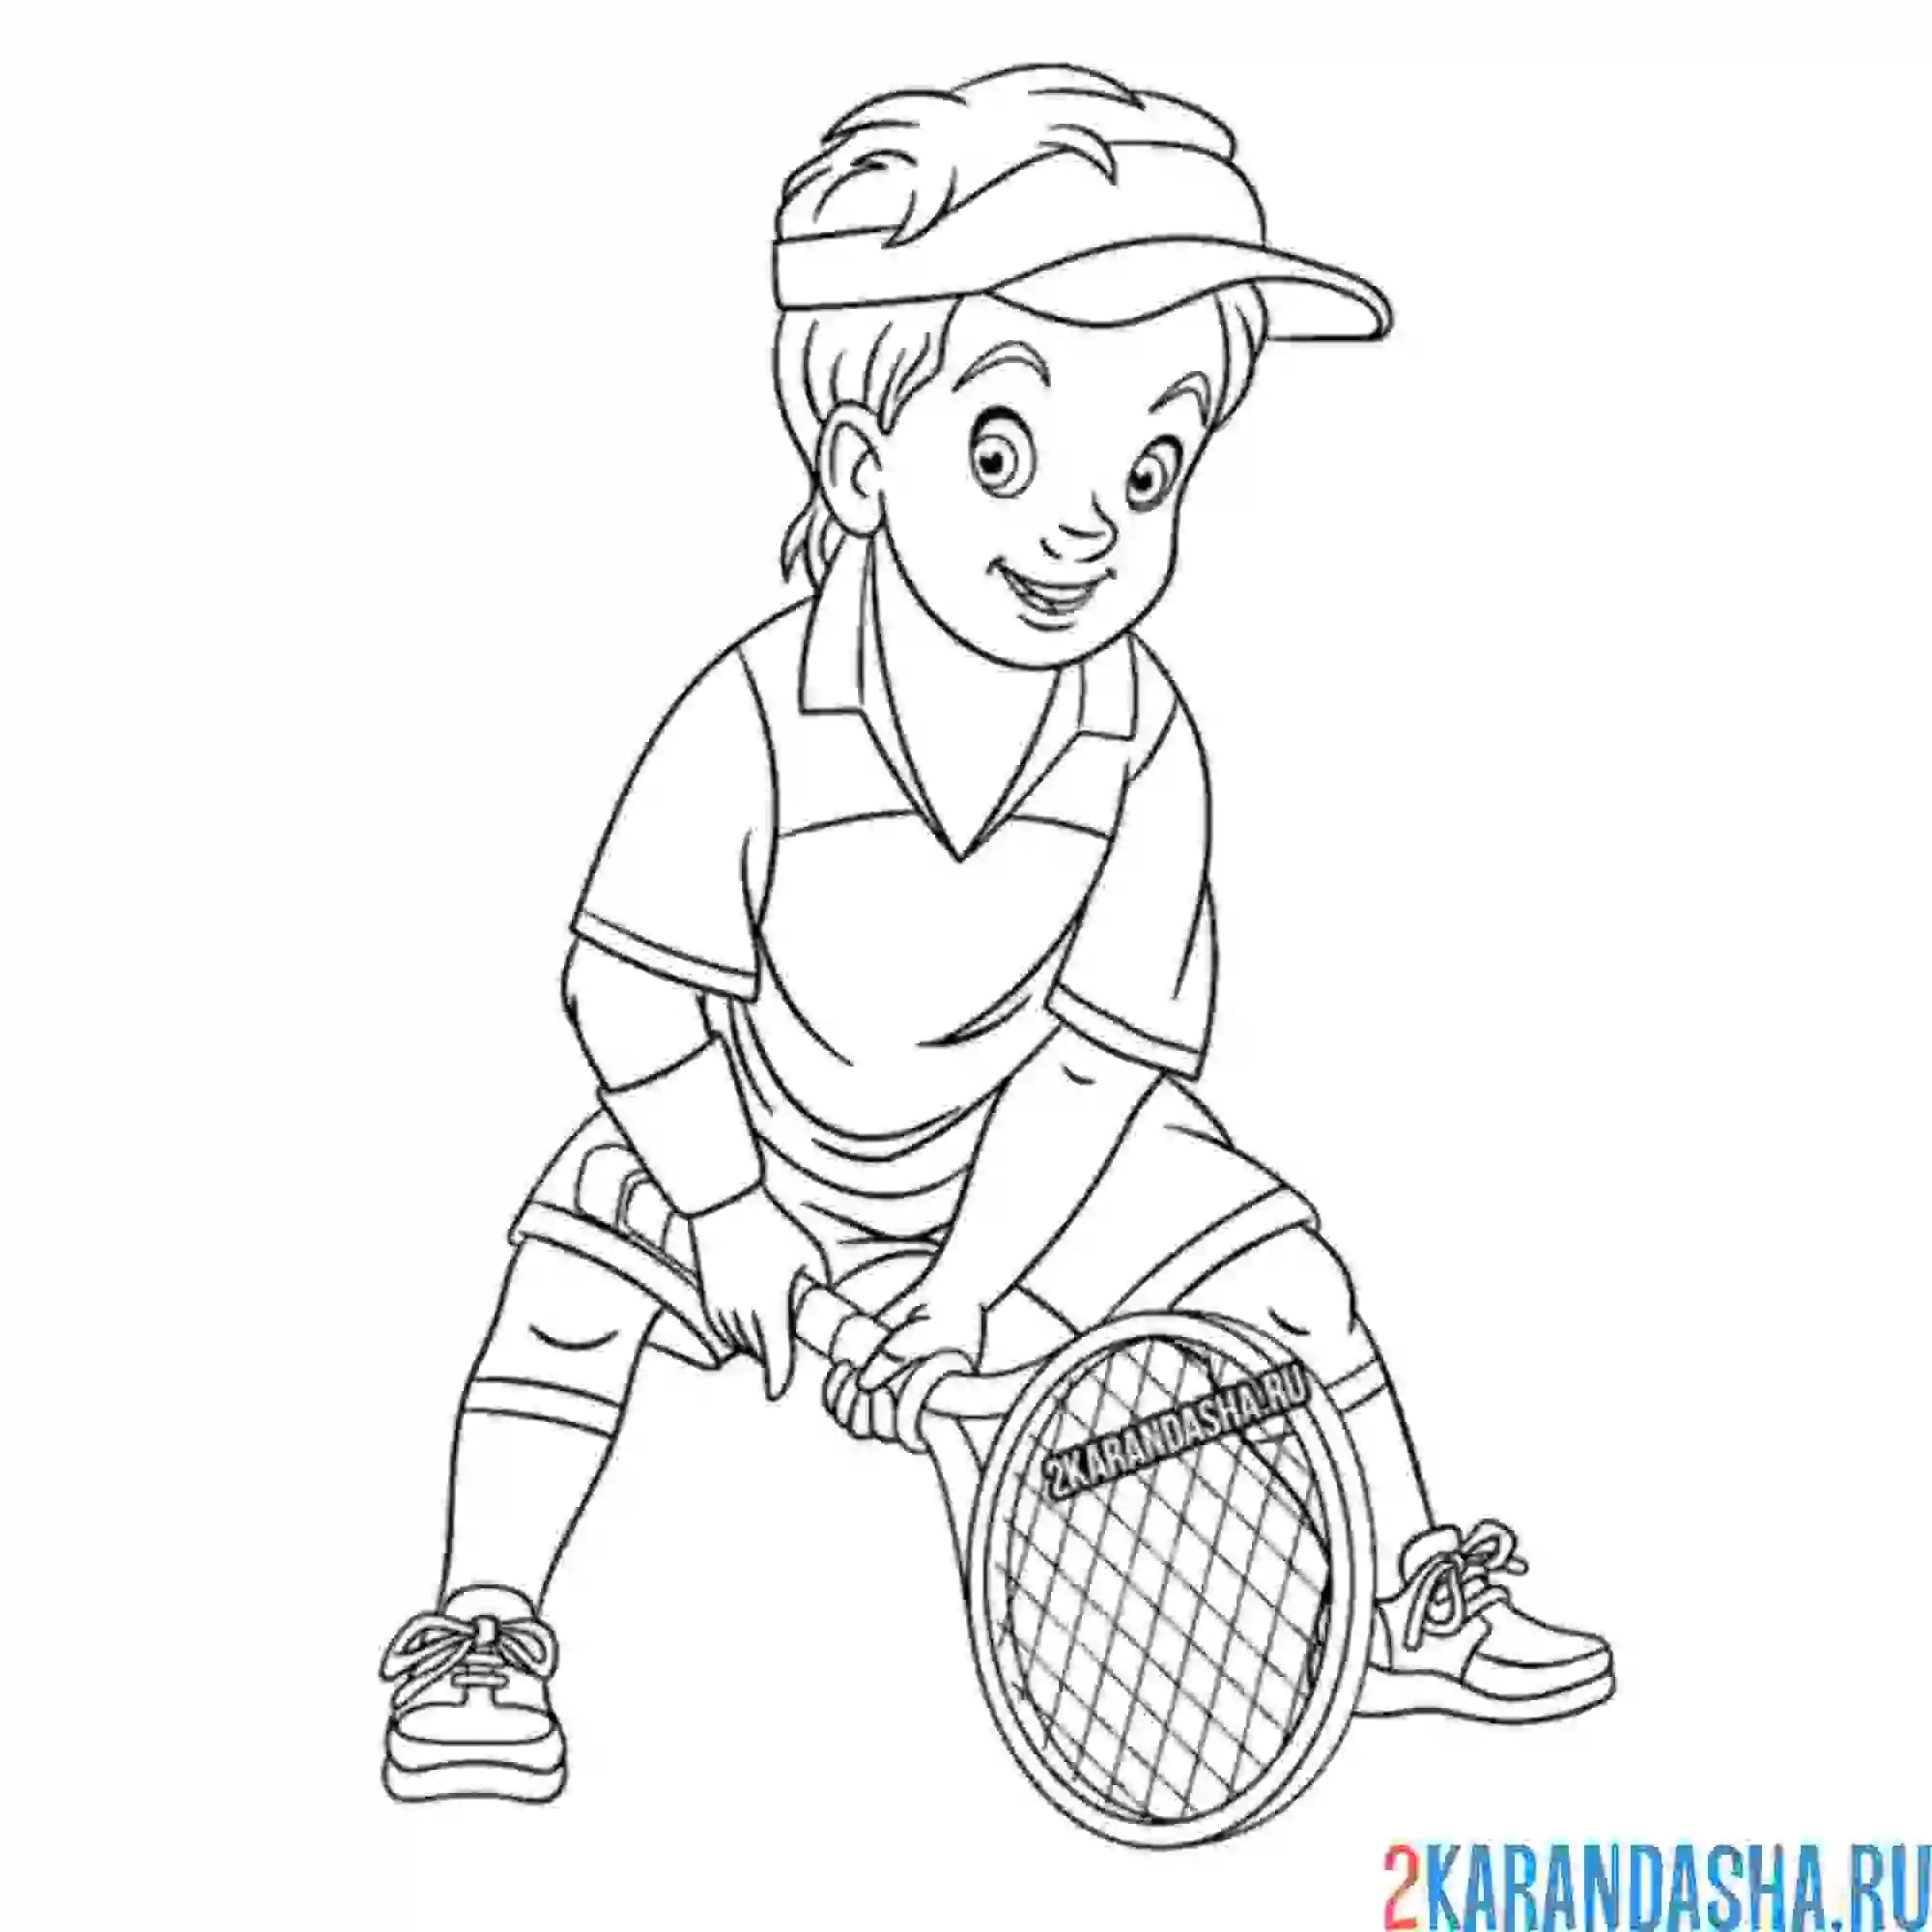 Раскраска мальчик играет в большой теннис